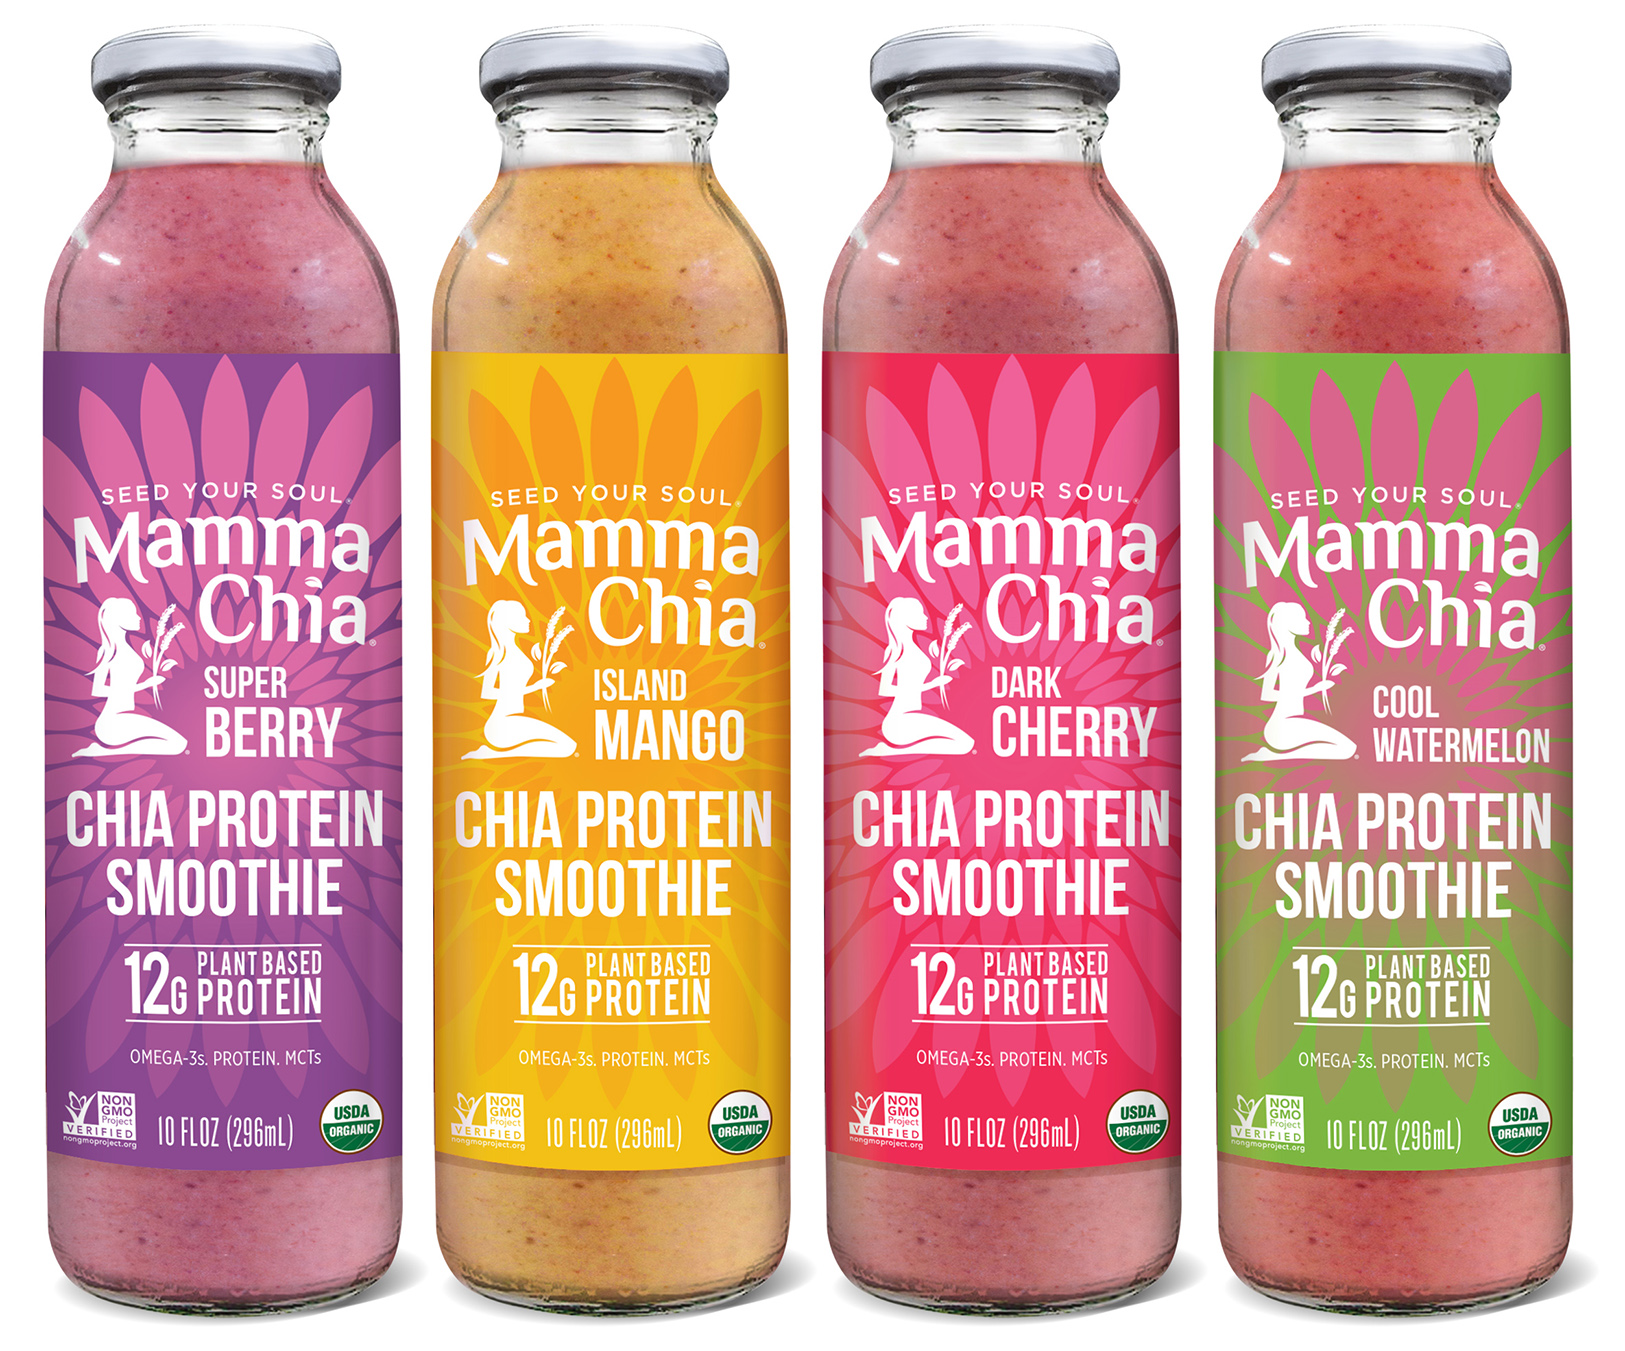 Mamma Chia's New Chia Protein Smoothies